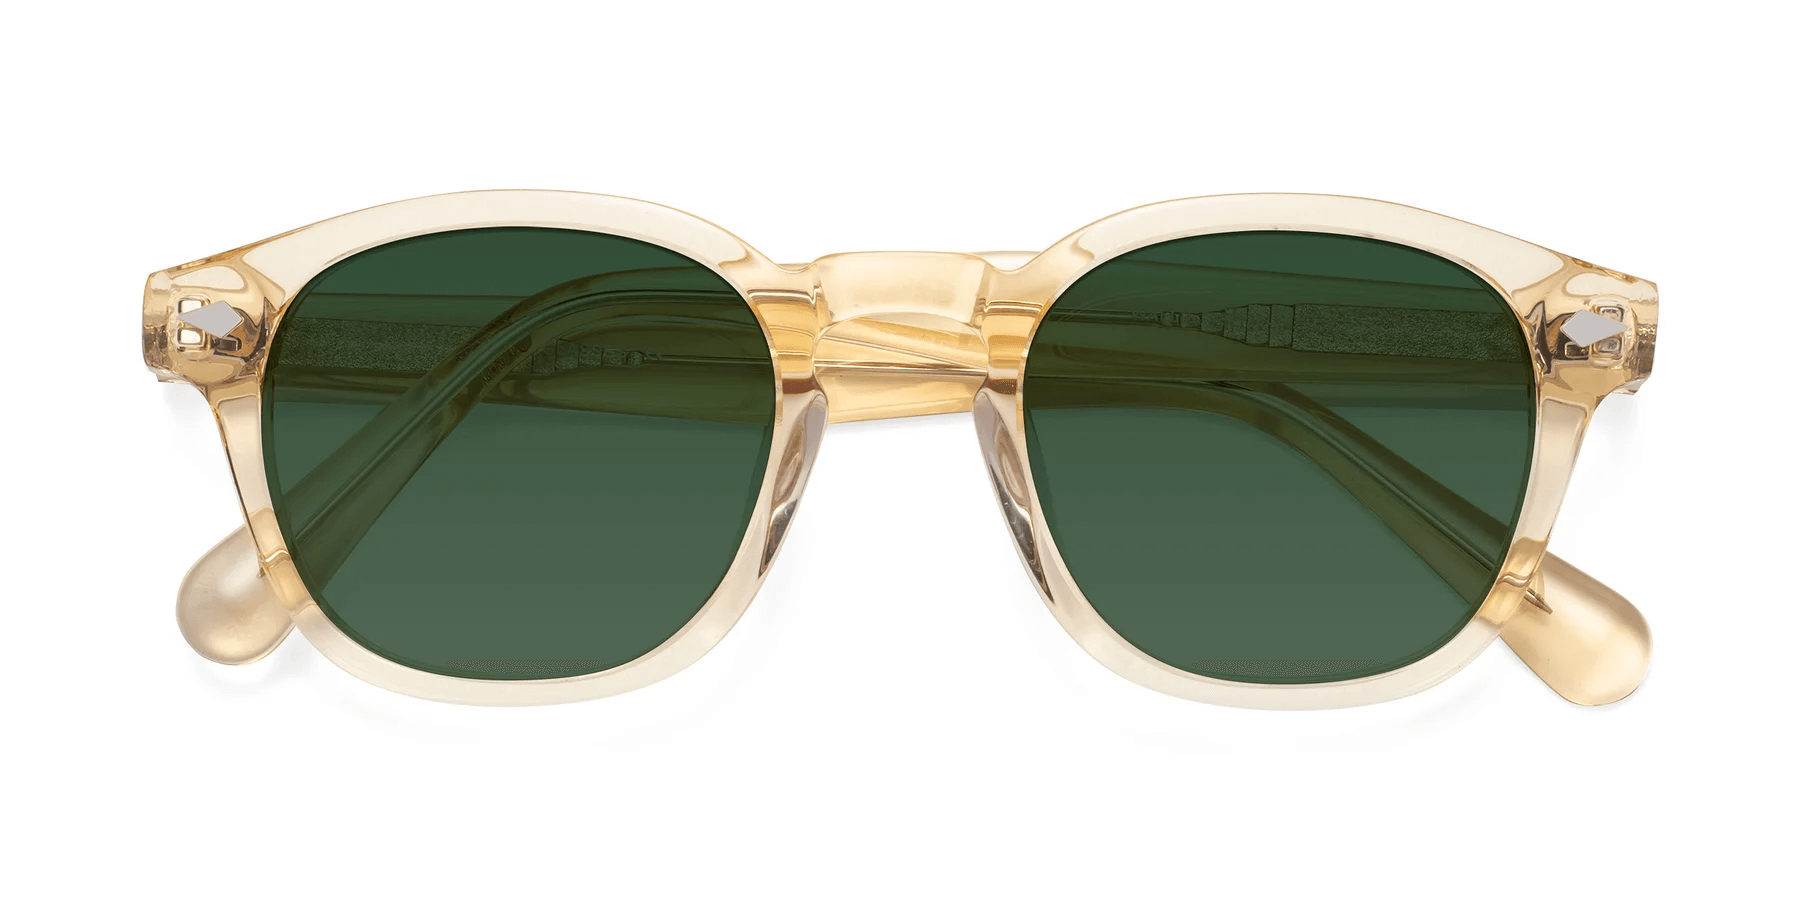 yesglasses sunglasses